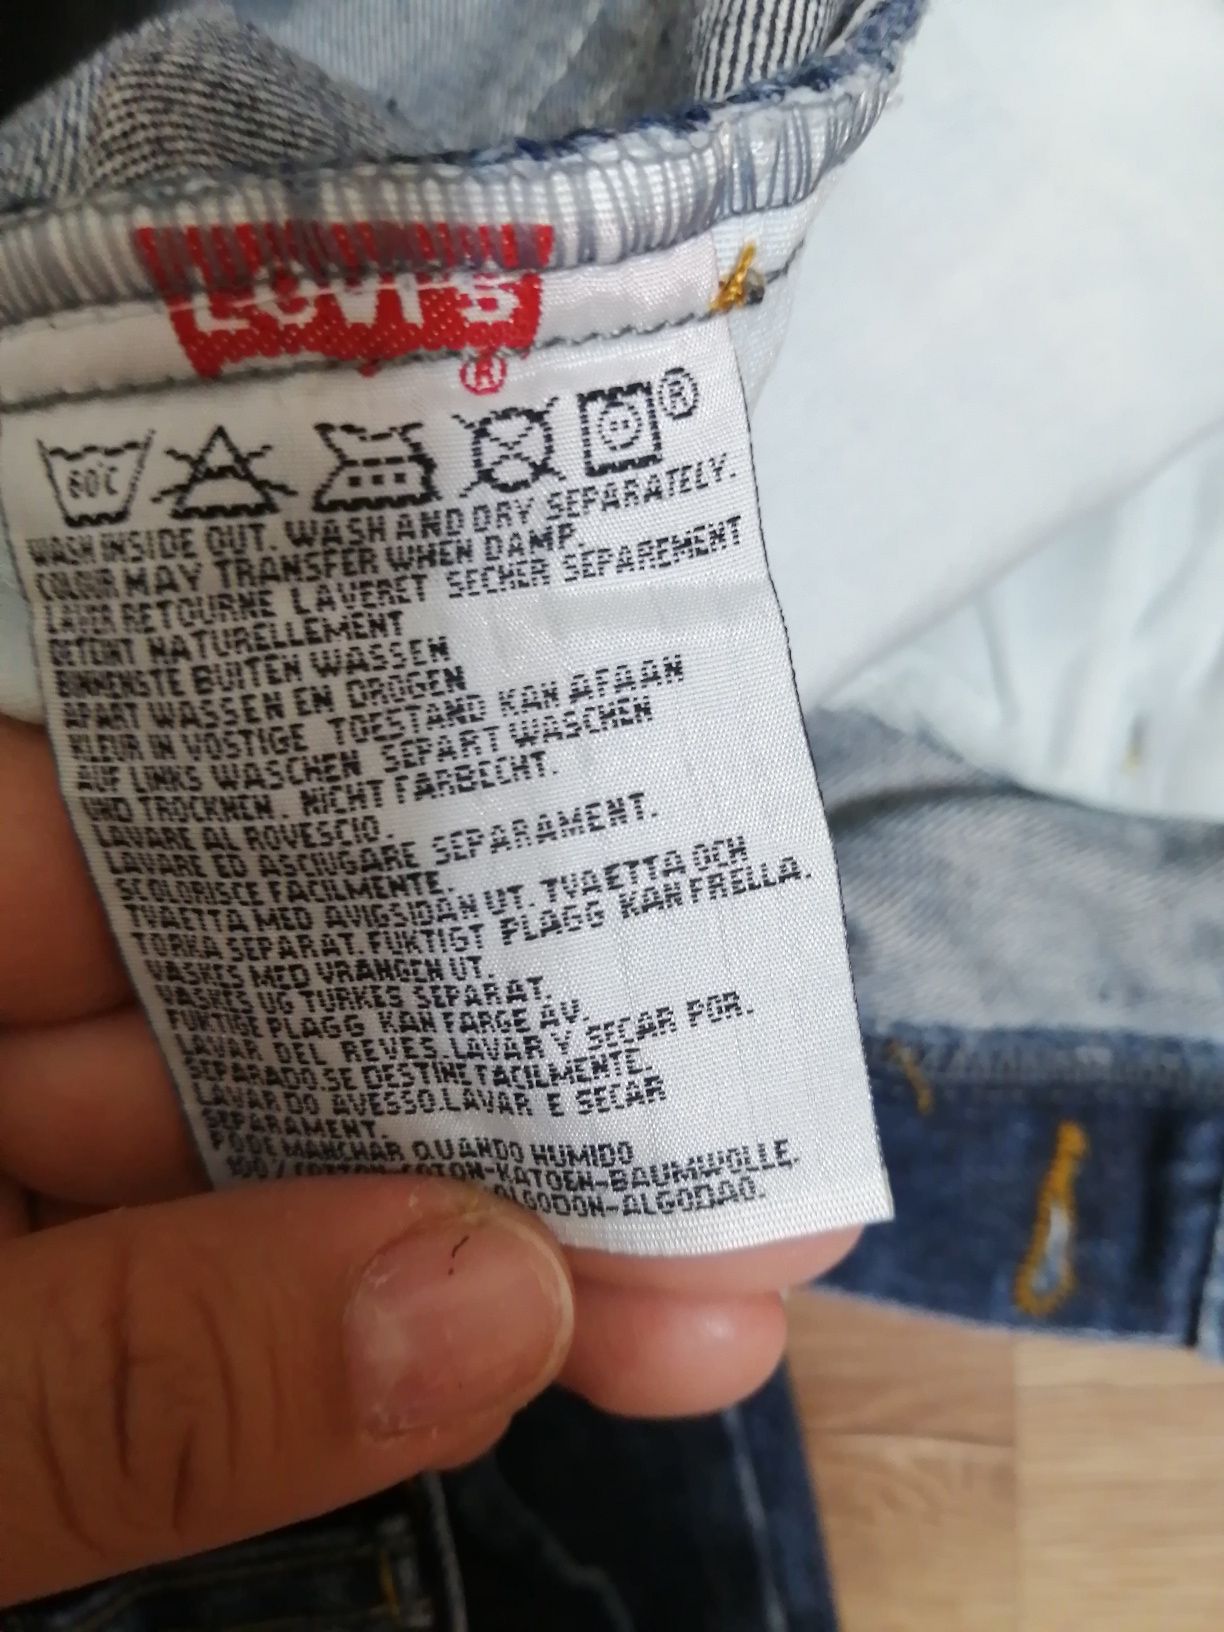 Фирменные джинсы Levis 501